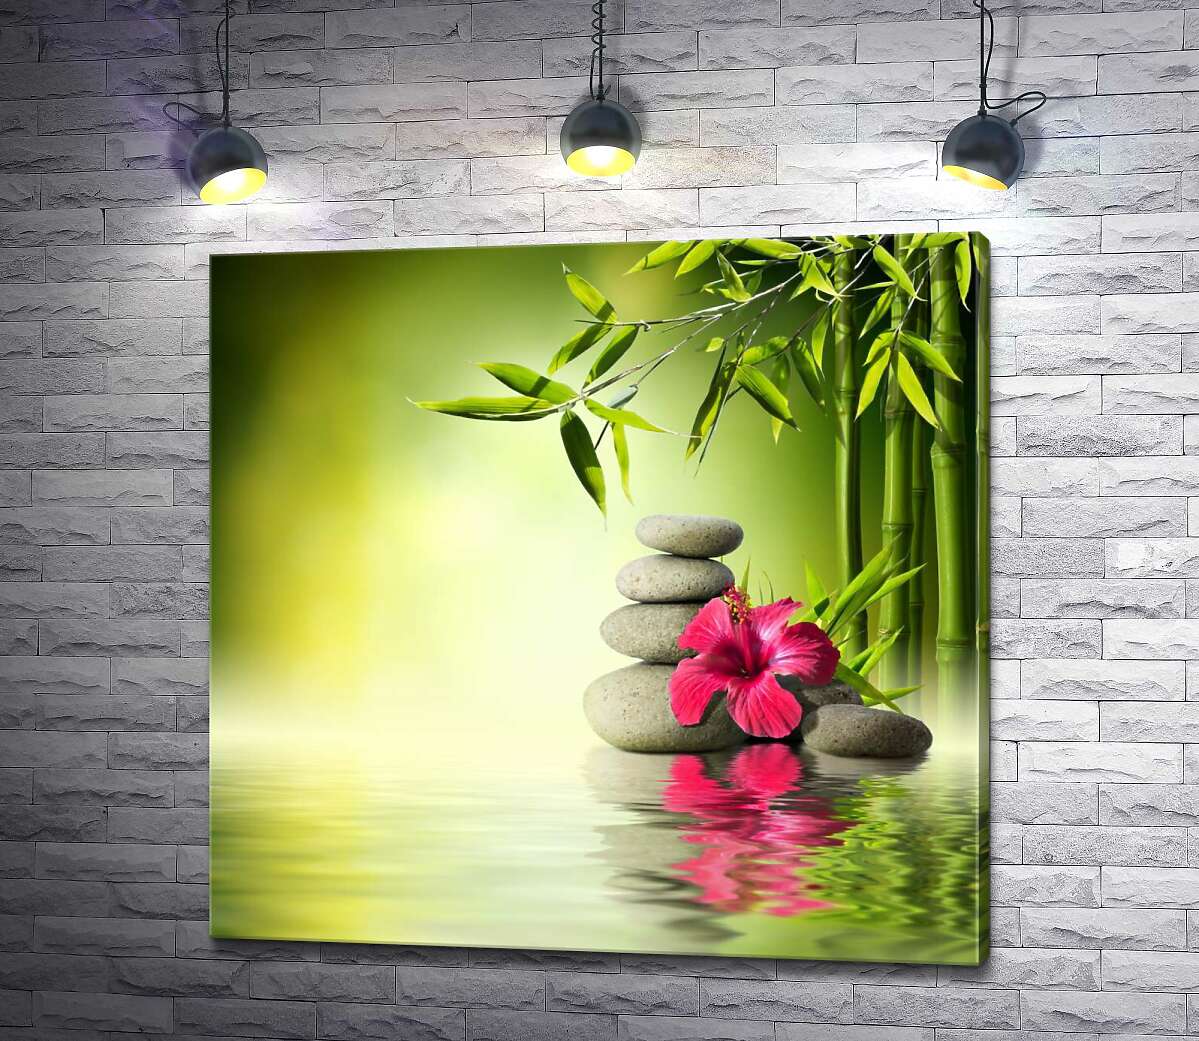 картина Малиновый цветок гибискуса и стройный бамбук среди серых камней на зеленой поверхности воды